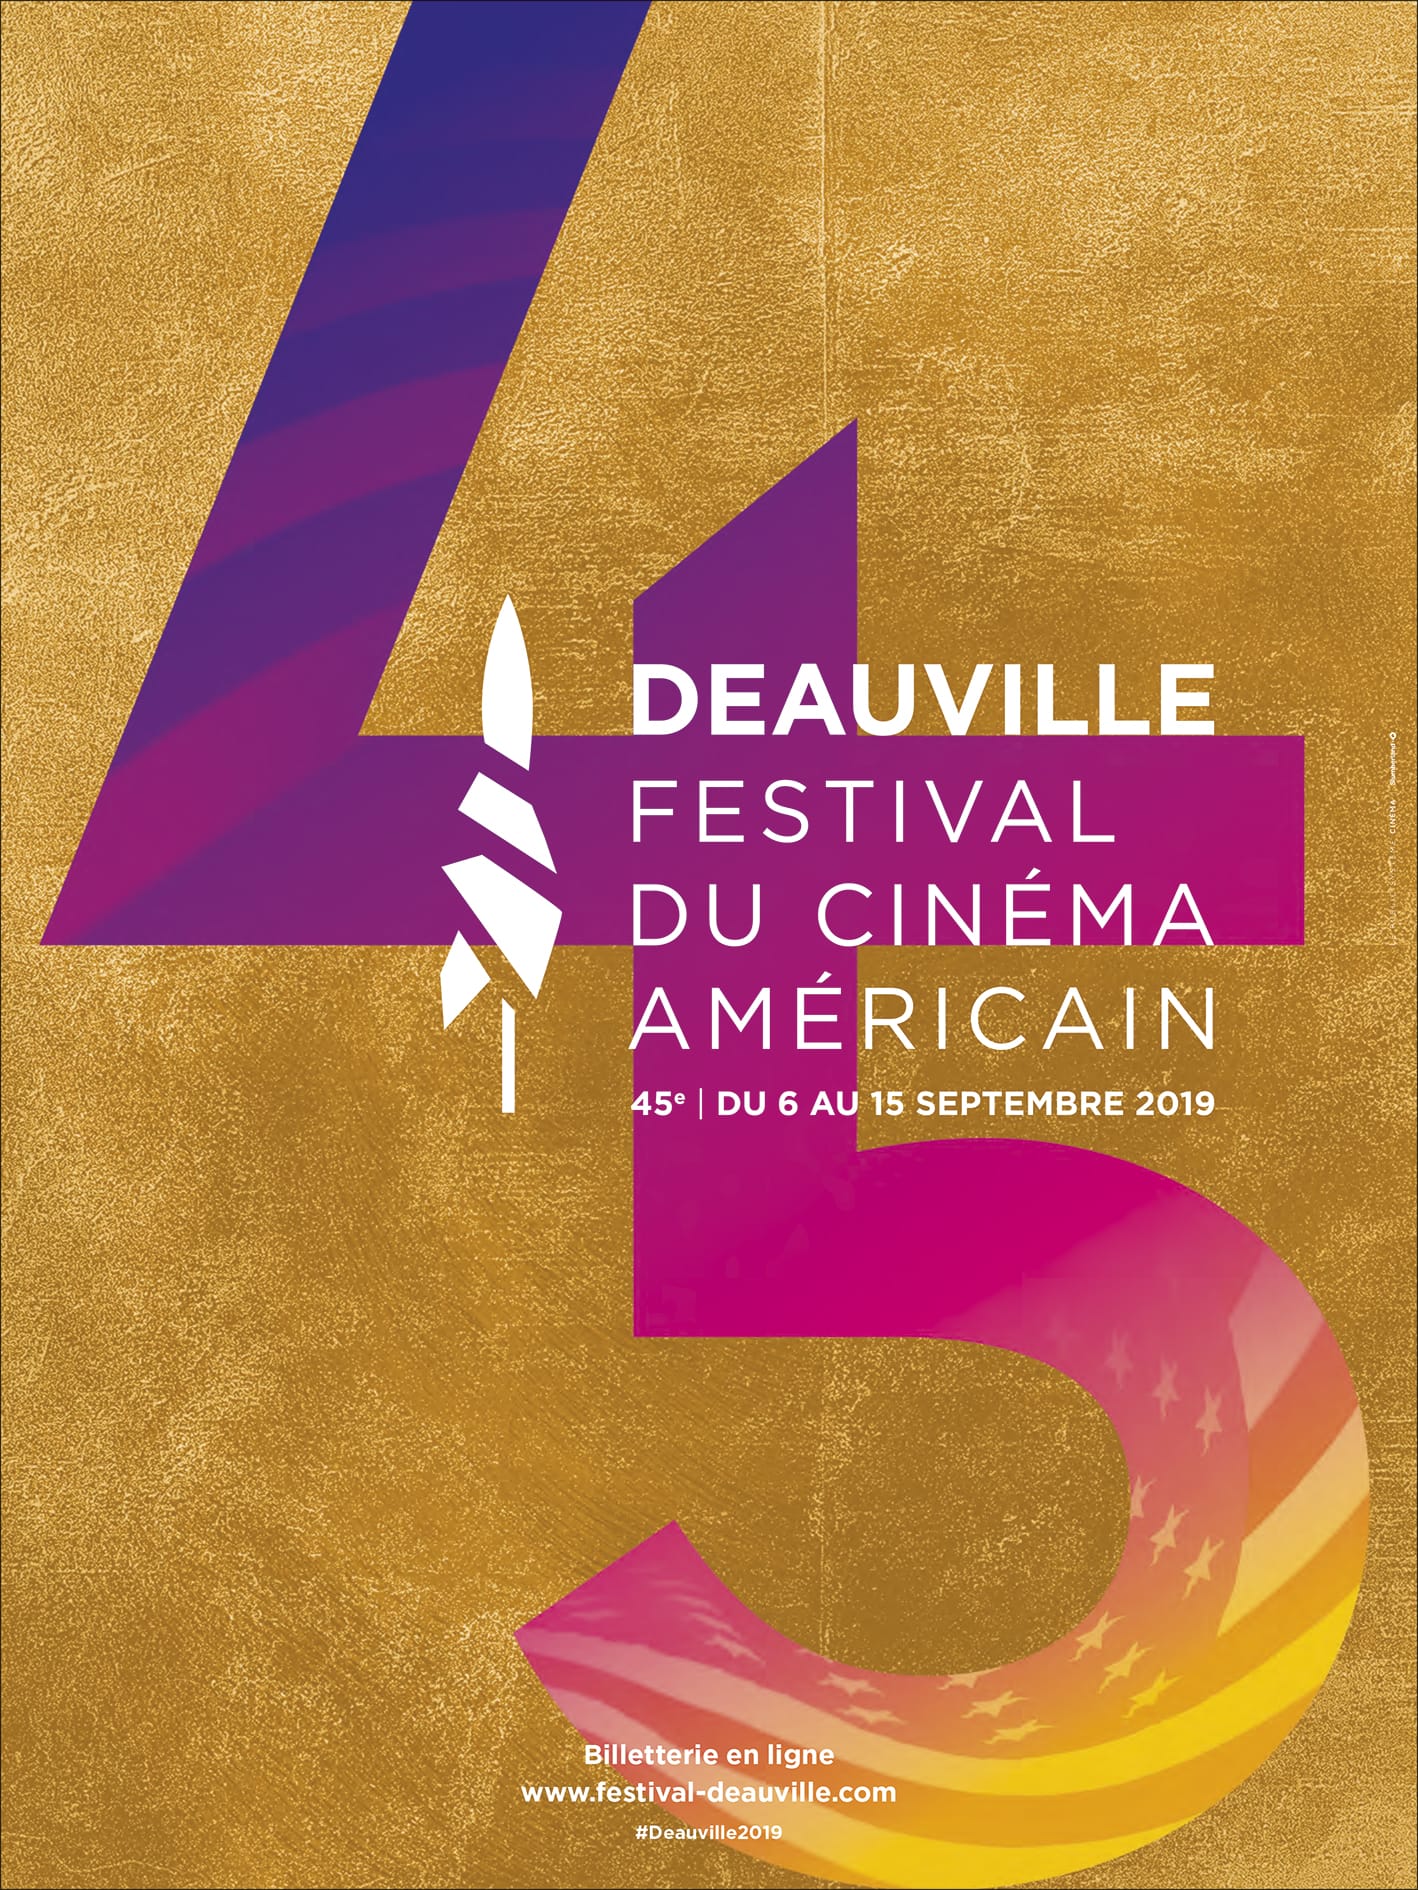 Festival du Cinéma Américain de Deauville 2019 affiche festival films cinéma